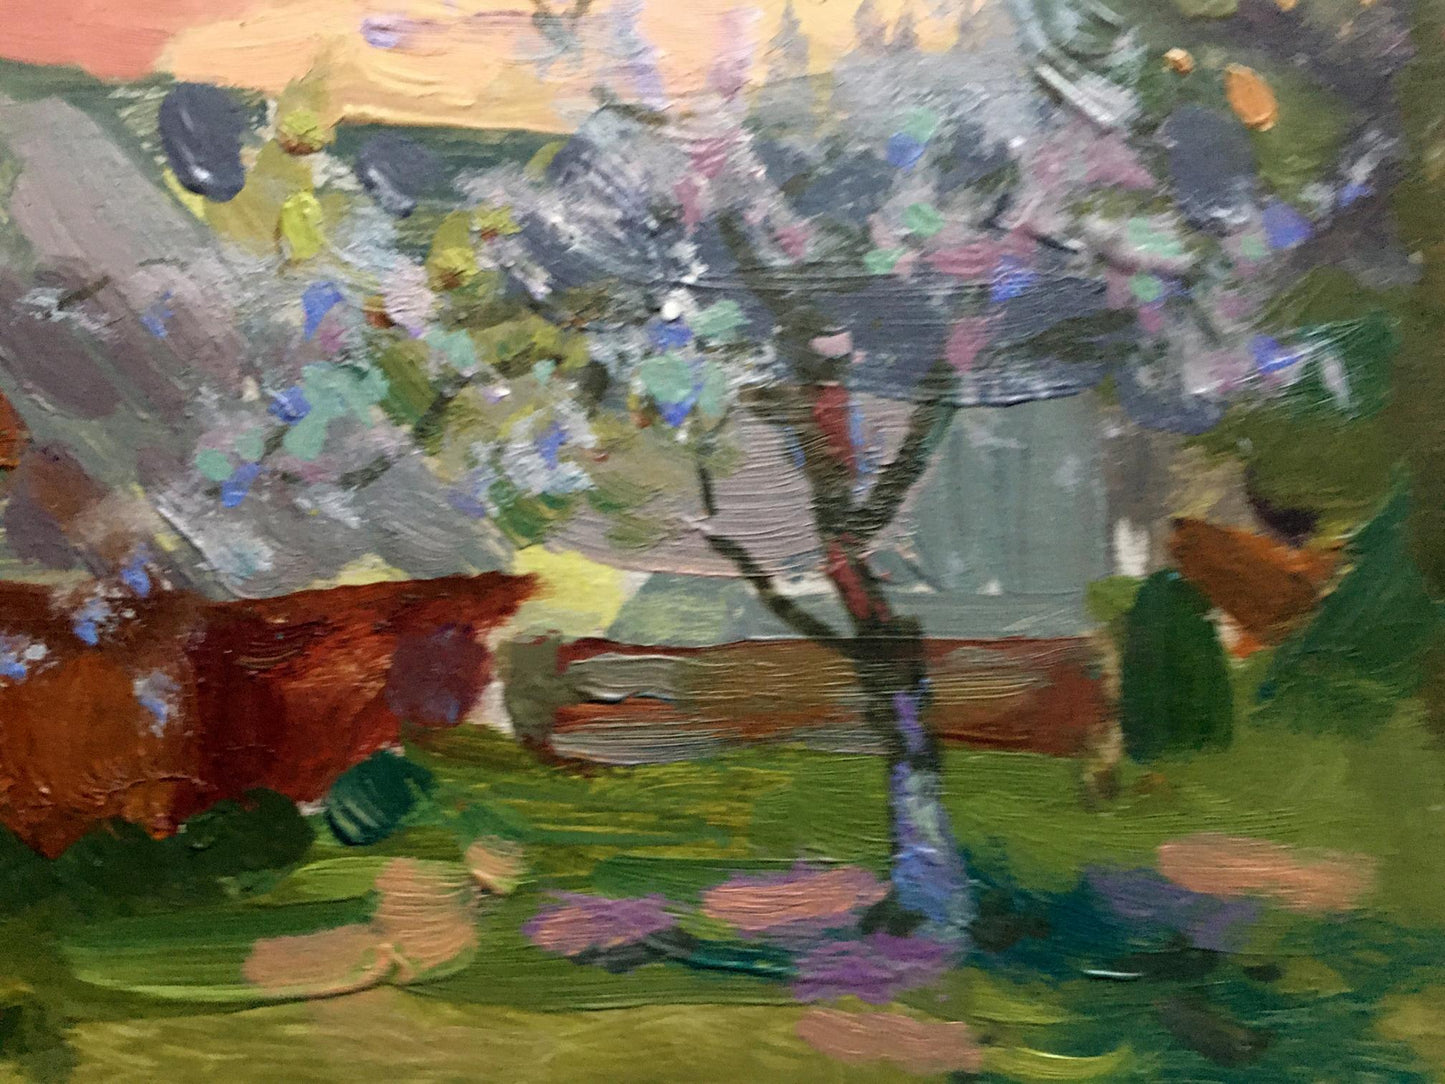 Oil painting Spring evening Batrakov Vladimir Grigorievich